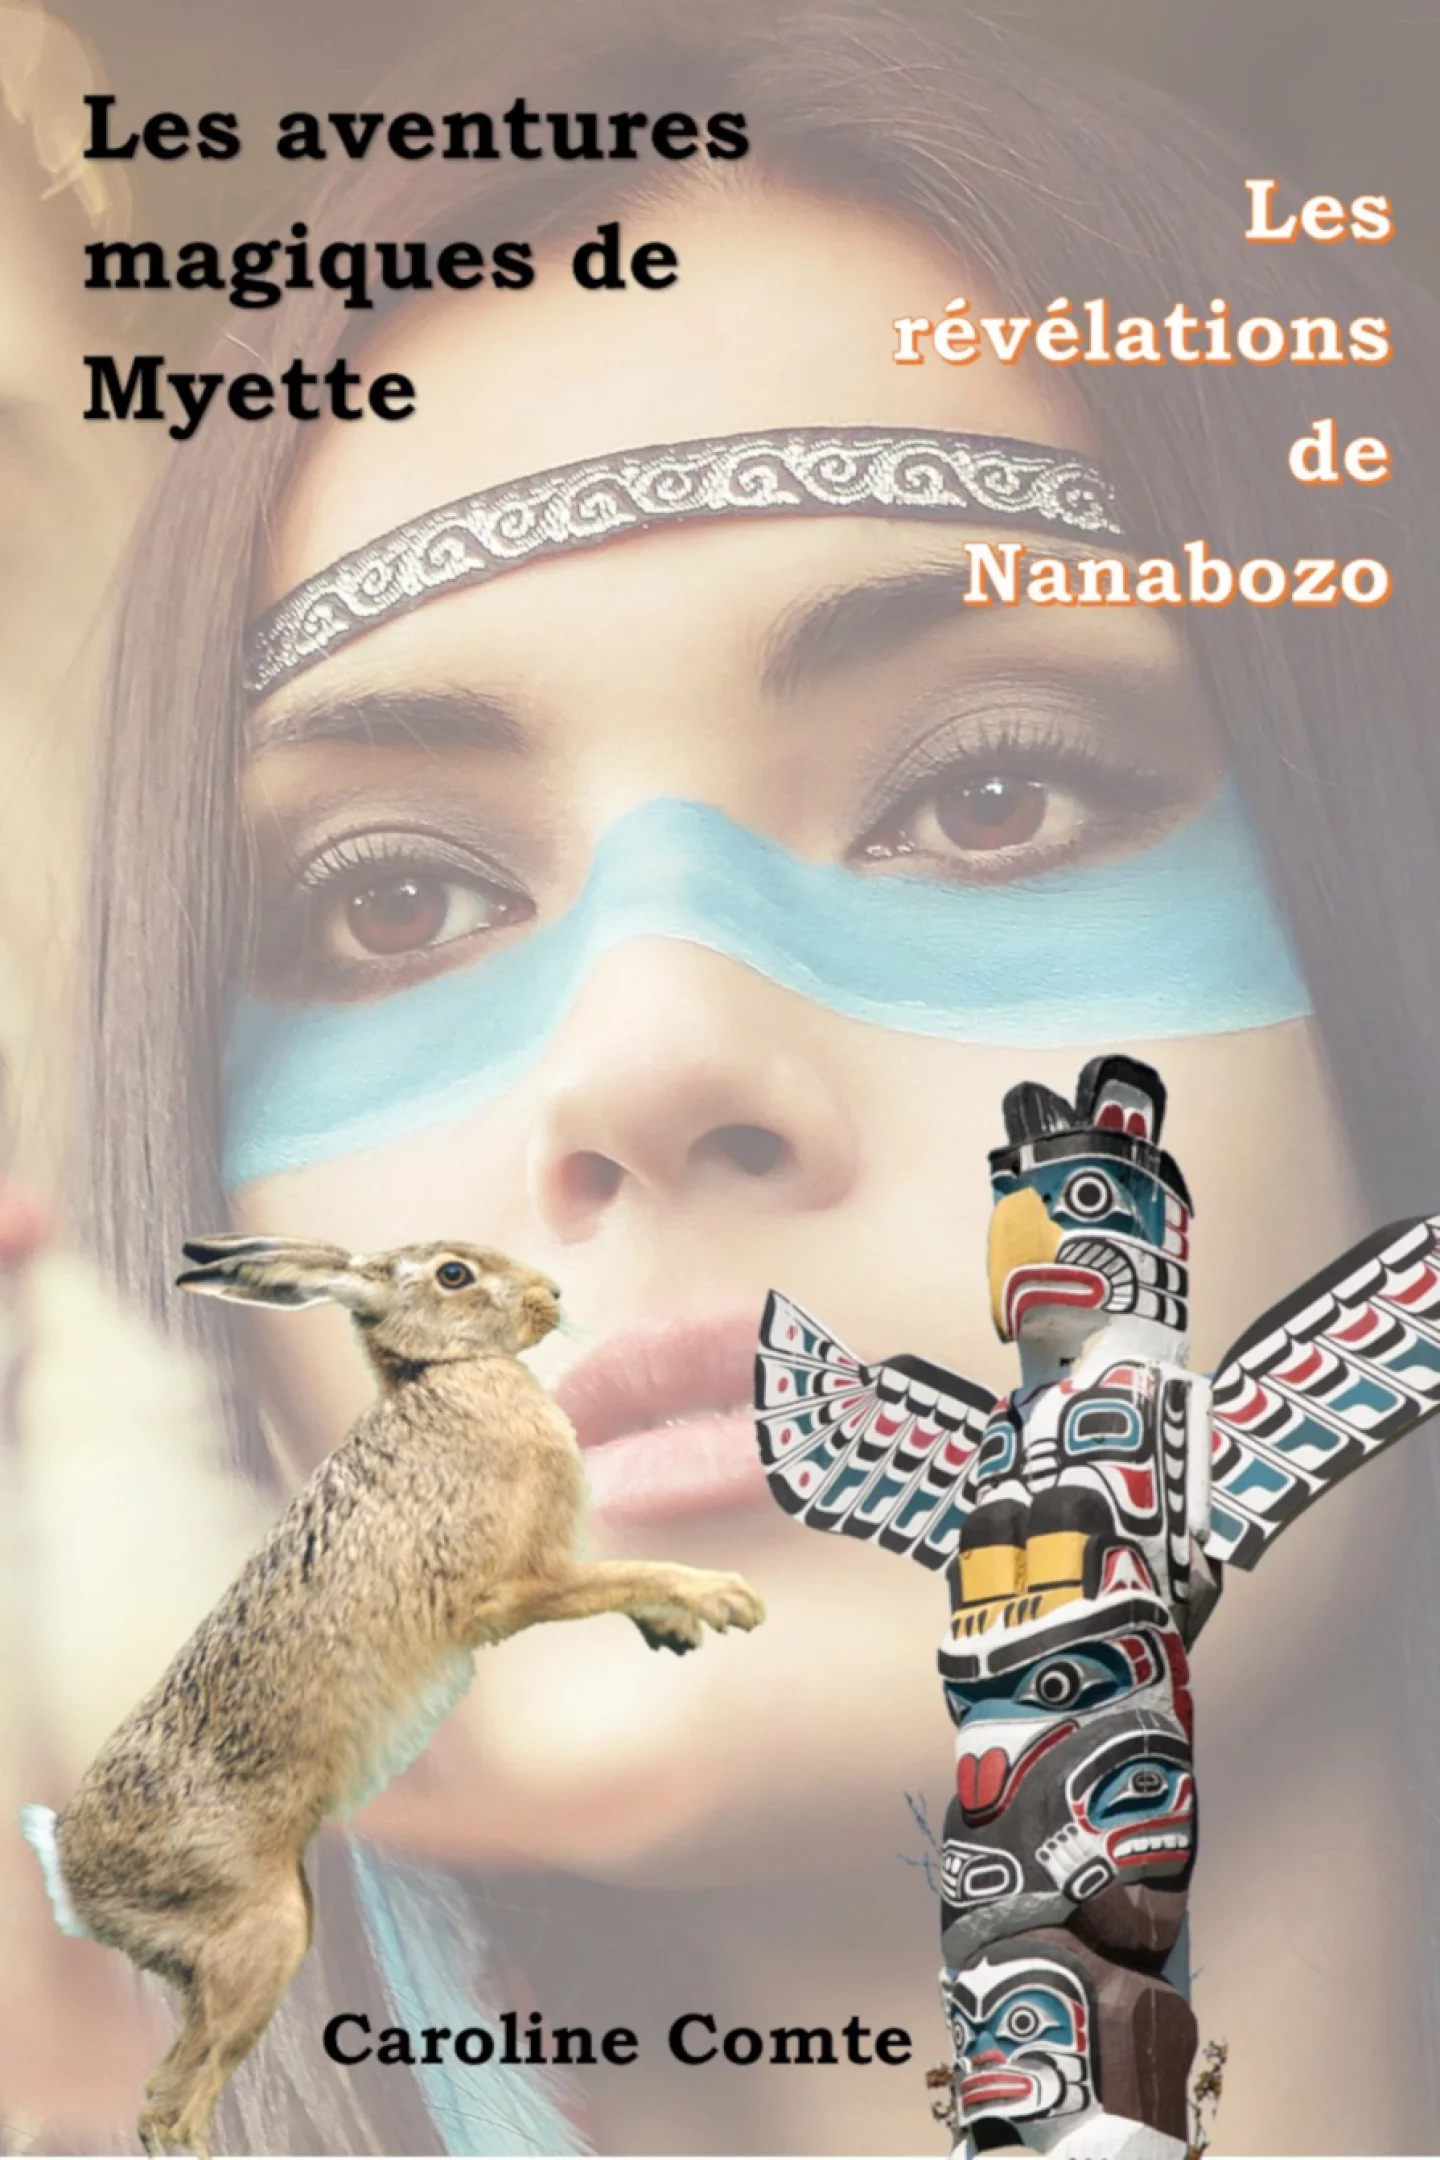 Les révélations de Nanabozo Les aventures magiques de Myette tome 3 de Caroline Comte